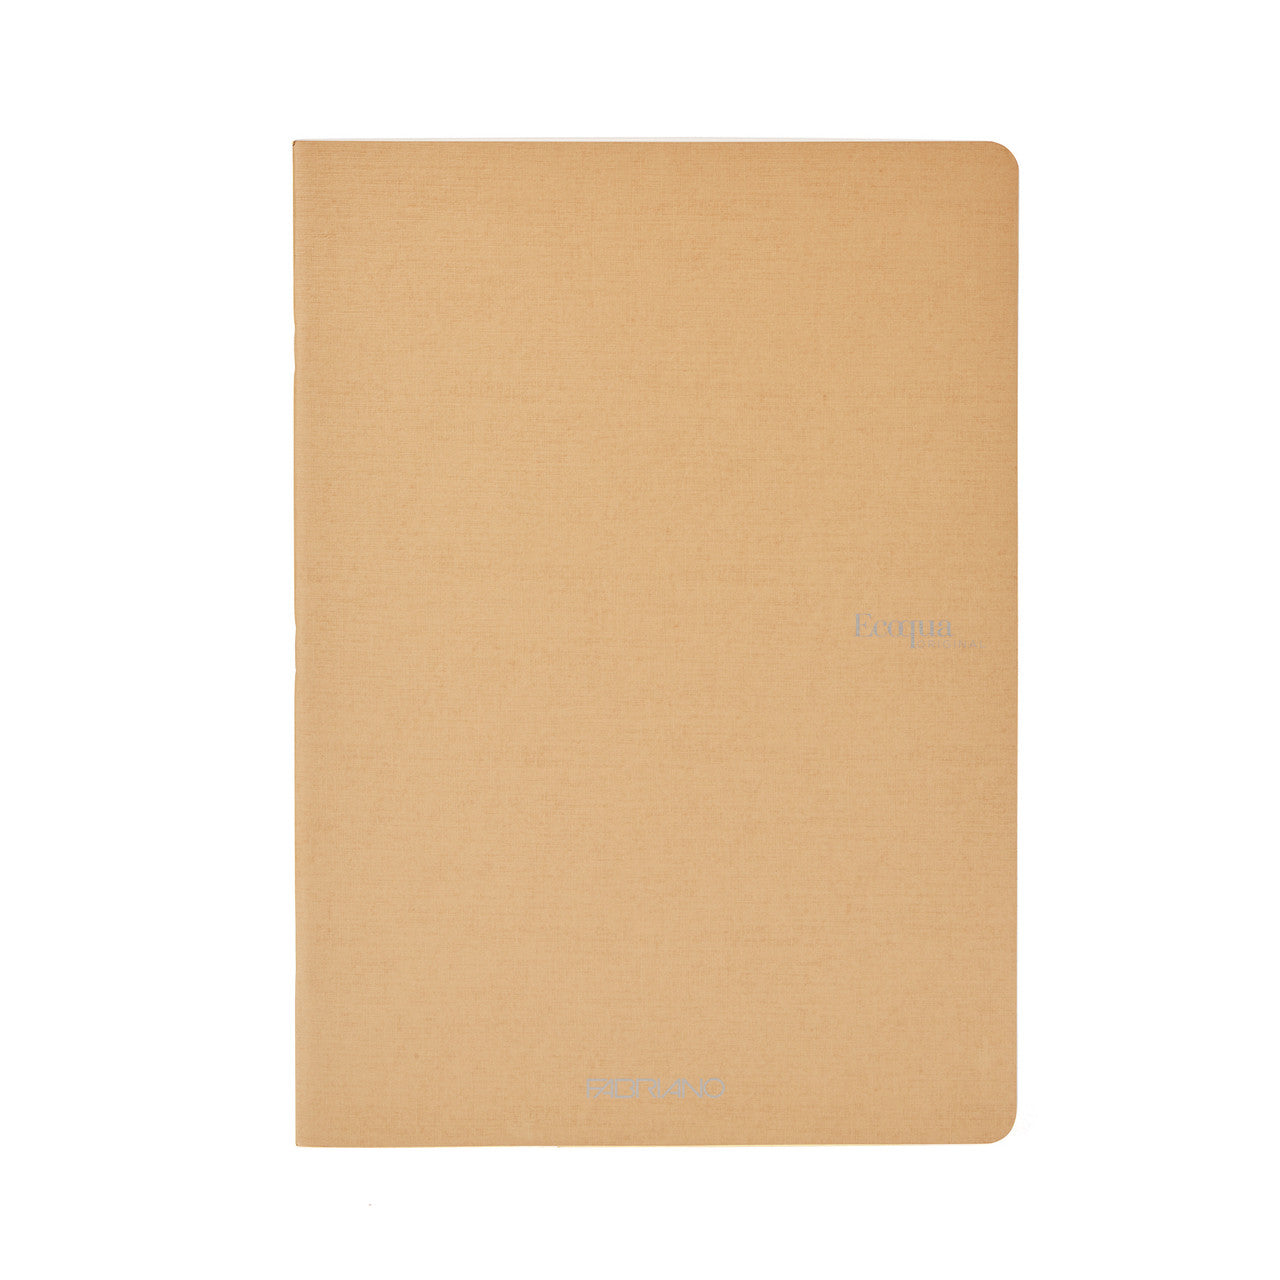 Fabriano EcoQua Original Staple-Bound Notebooks